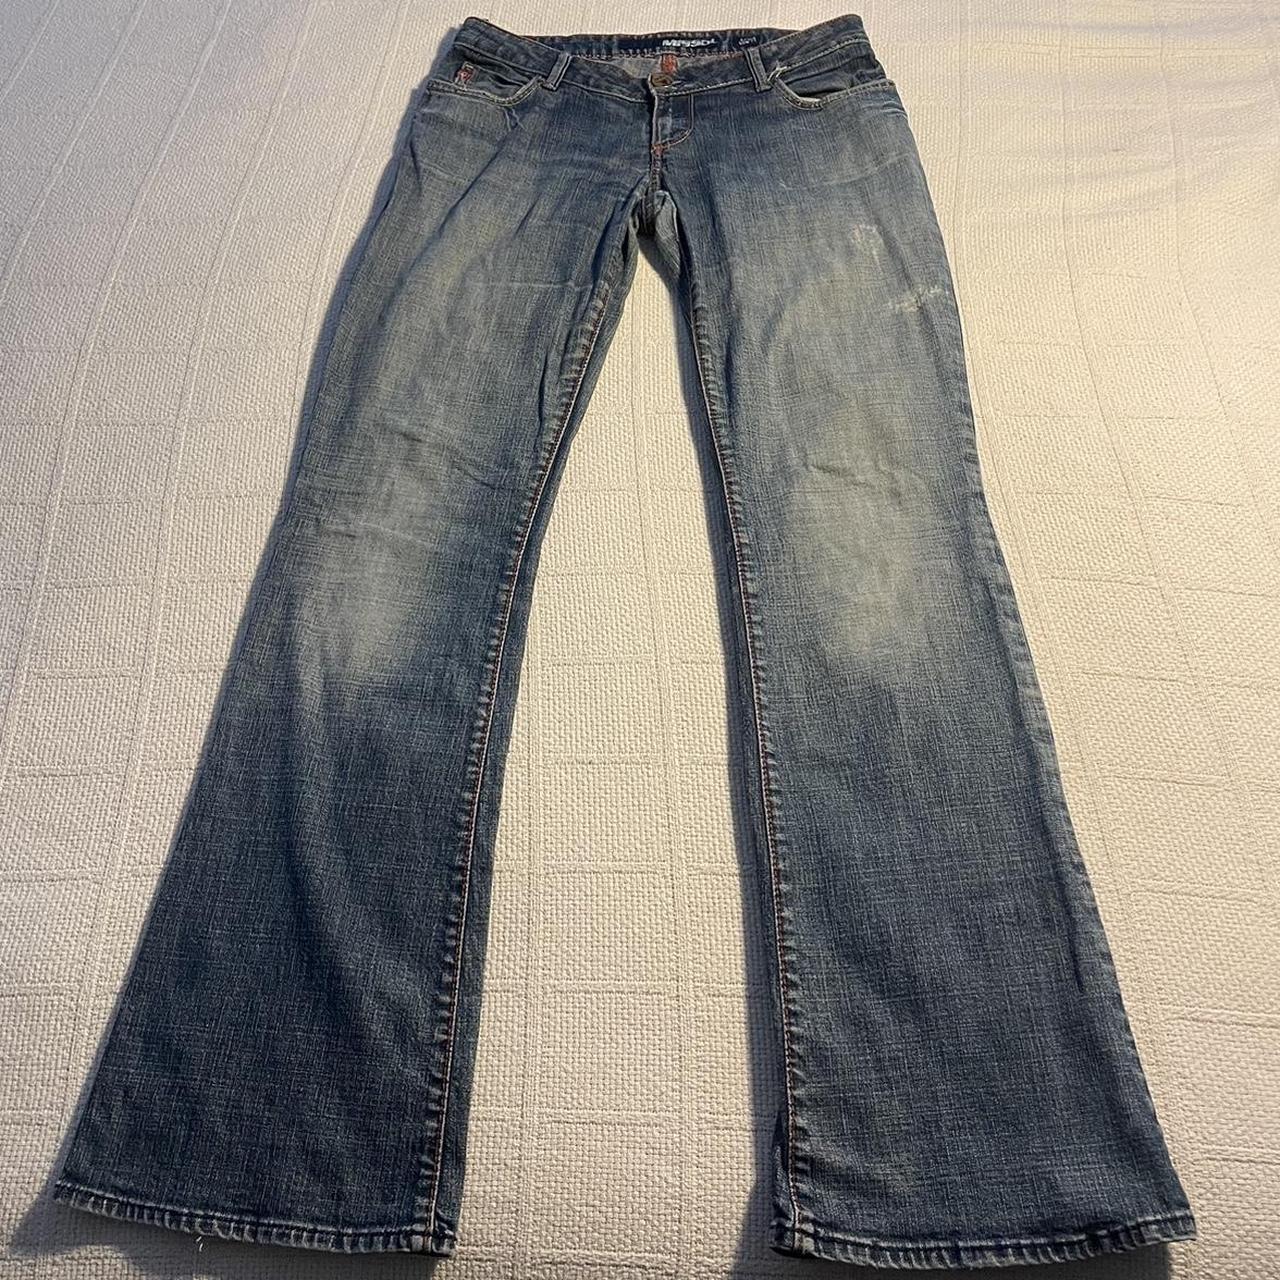 Vintage miss60 women’s jeans -size 29x40 -great... - Depop